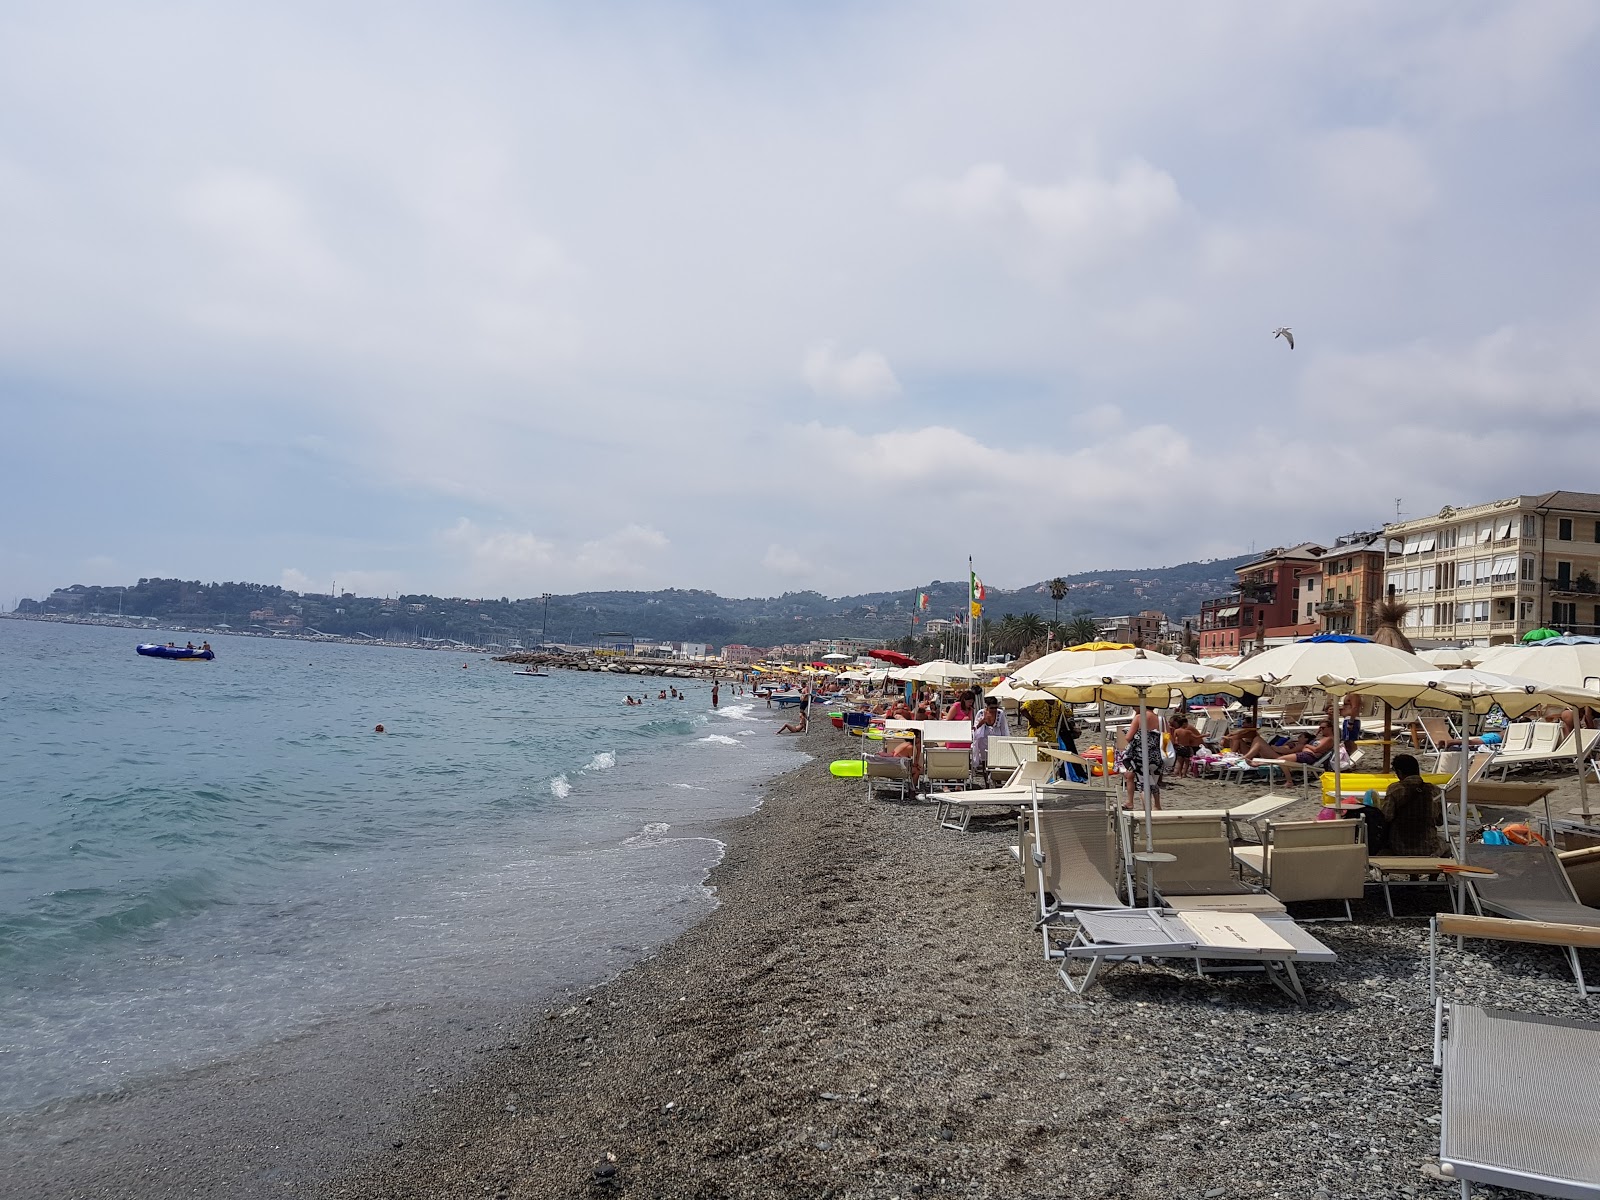 Foto von Spiaggia Varazze - beliebter Ort unter Entspannungskennern